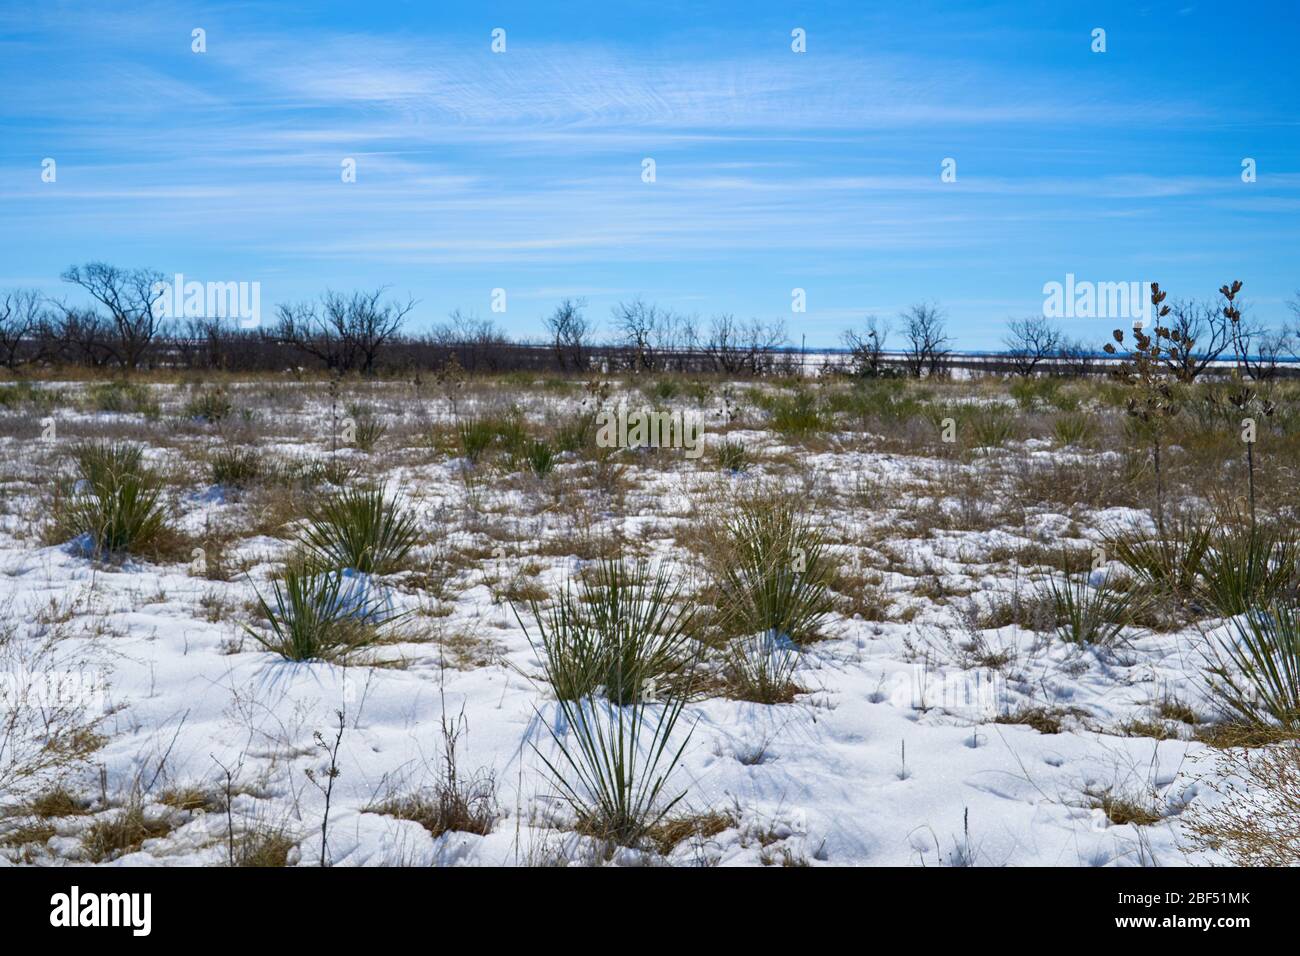 Paysage désertique enneigé avec des usines Yucca au Texas Banque D'Images